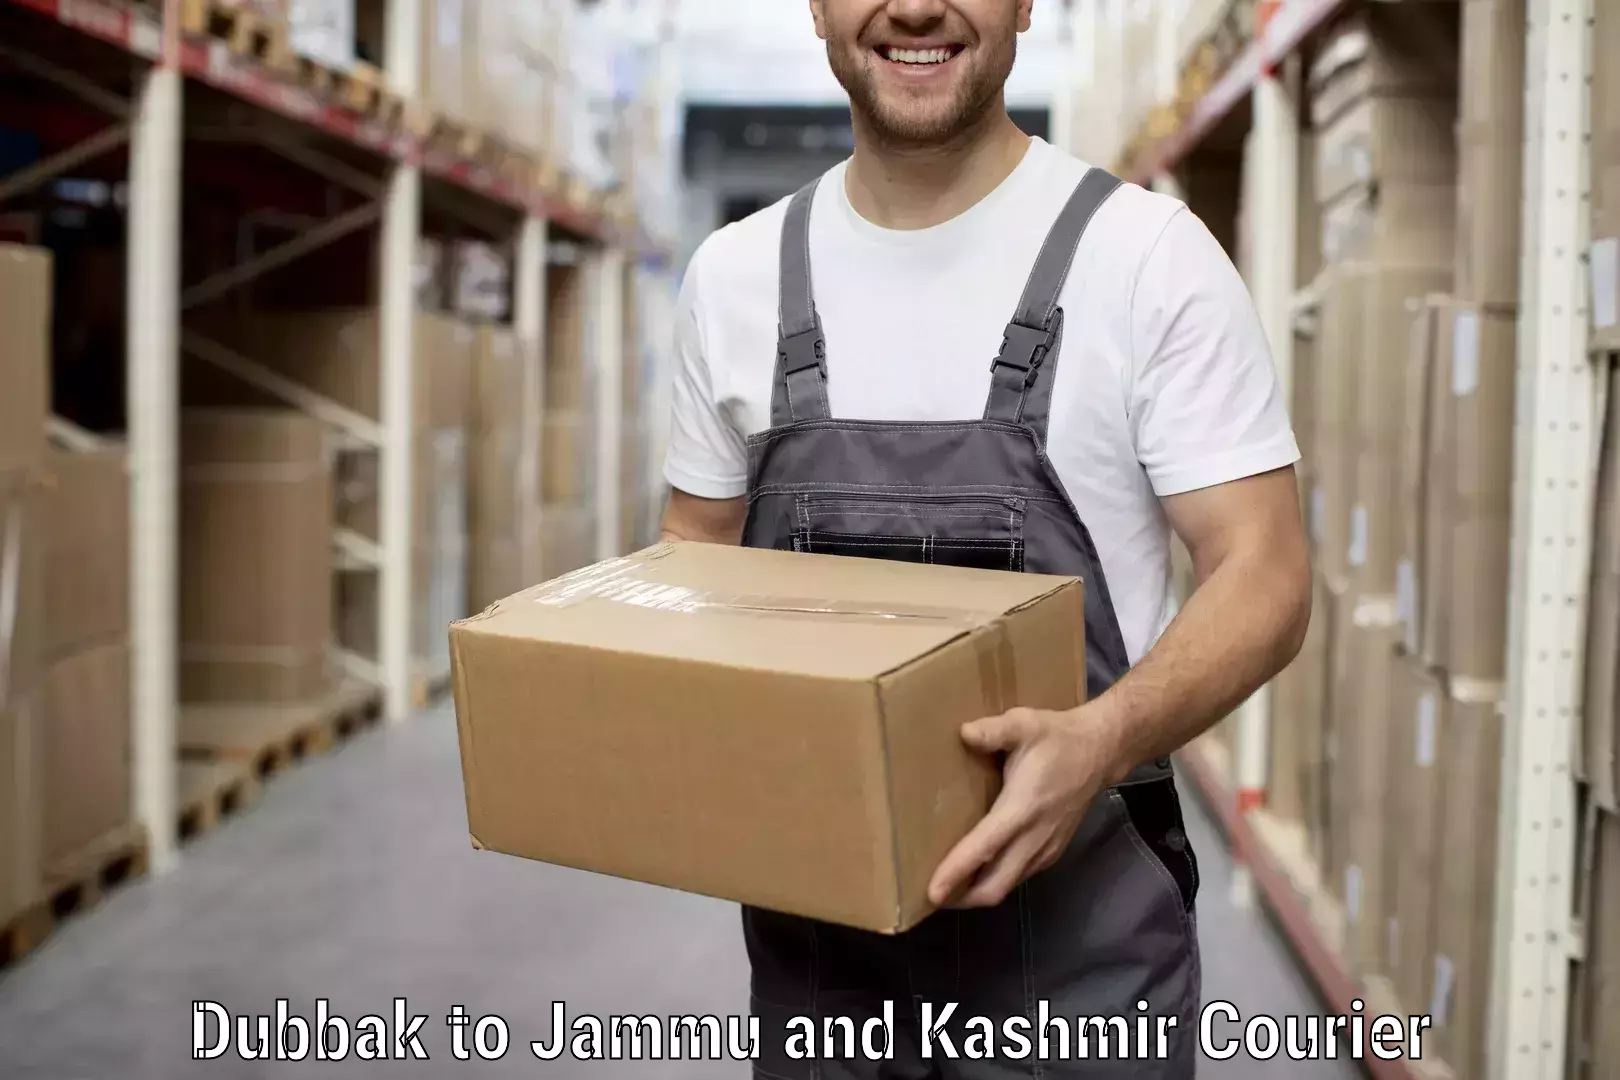 Furniture delivery service Dubbak to Rajouri